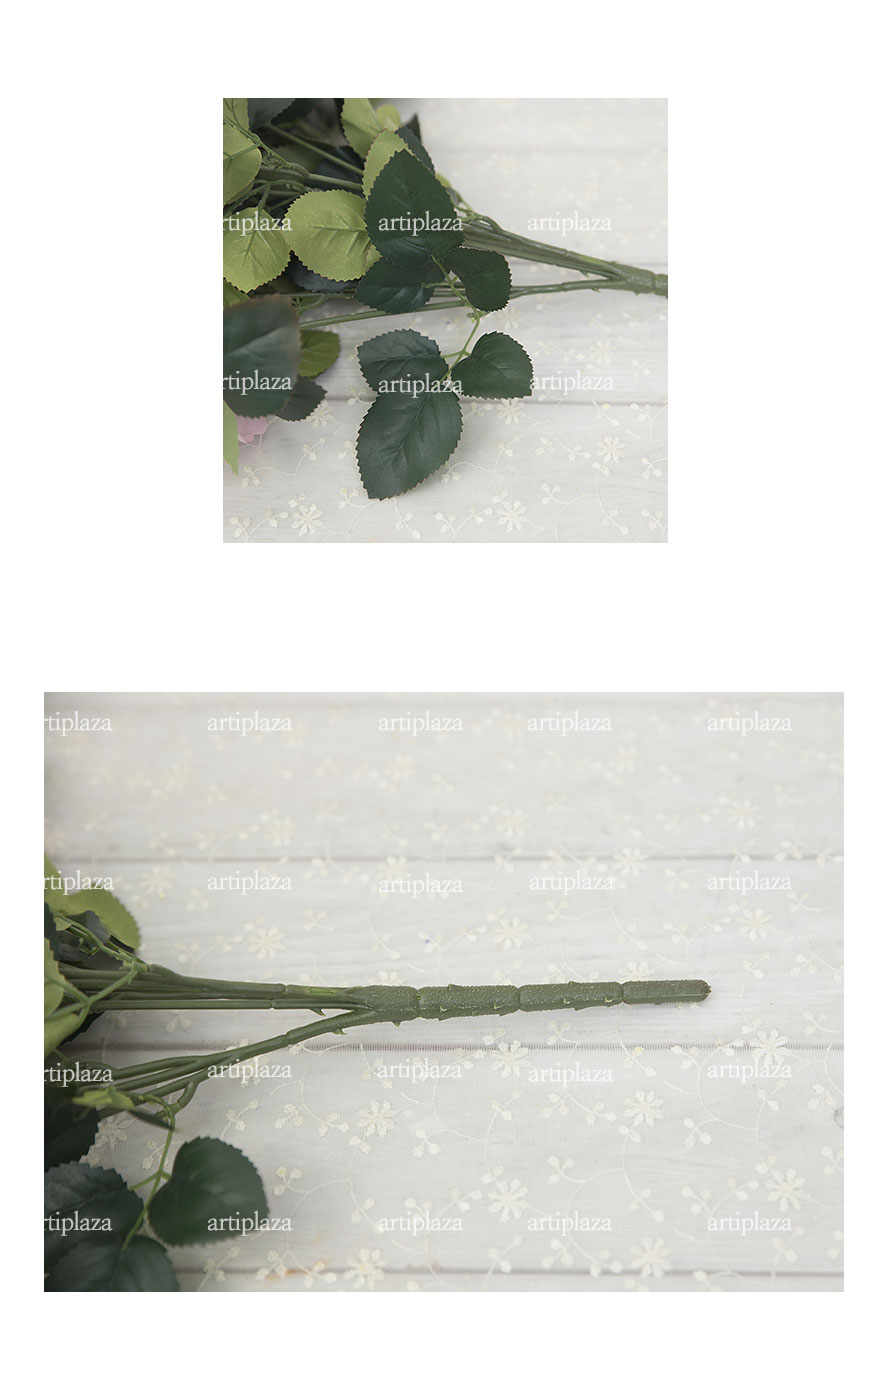 실크플라워 마르샤 장미 부쉬 잎사귀, 뿌리부분 디테일